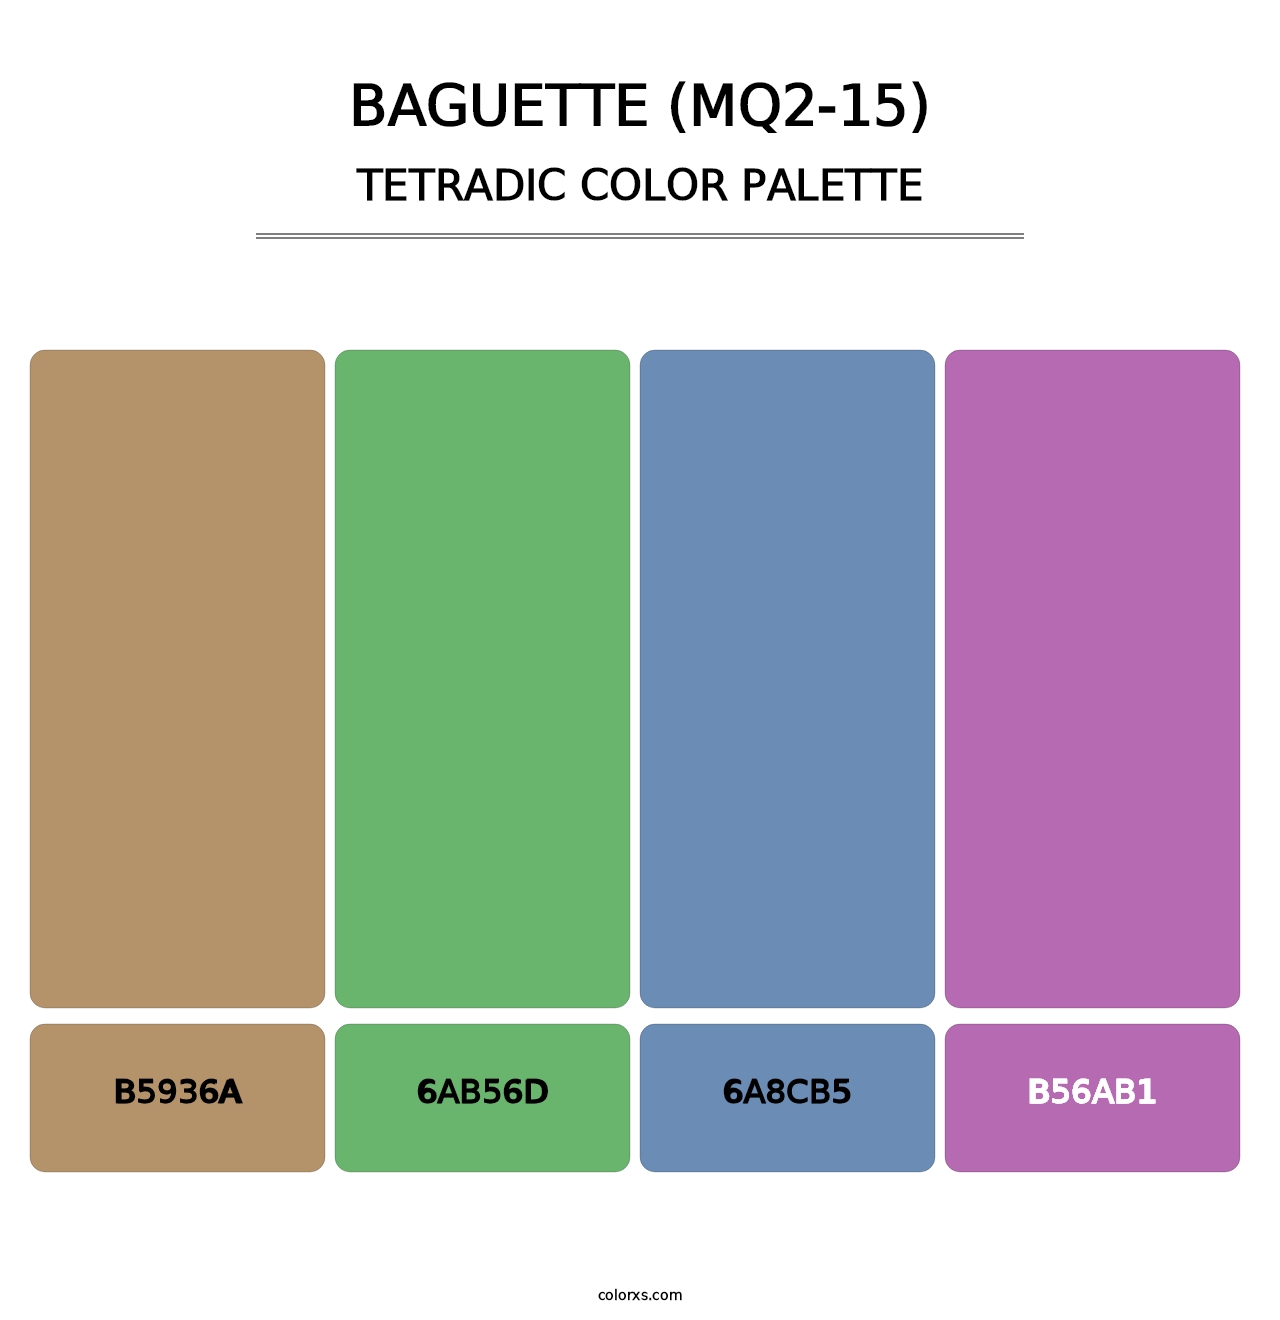 Baguette (MQ2-15) - Tetradic Color Palette